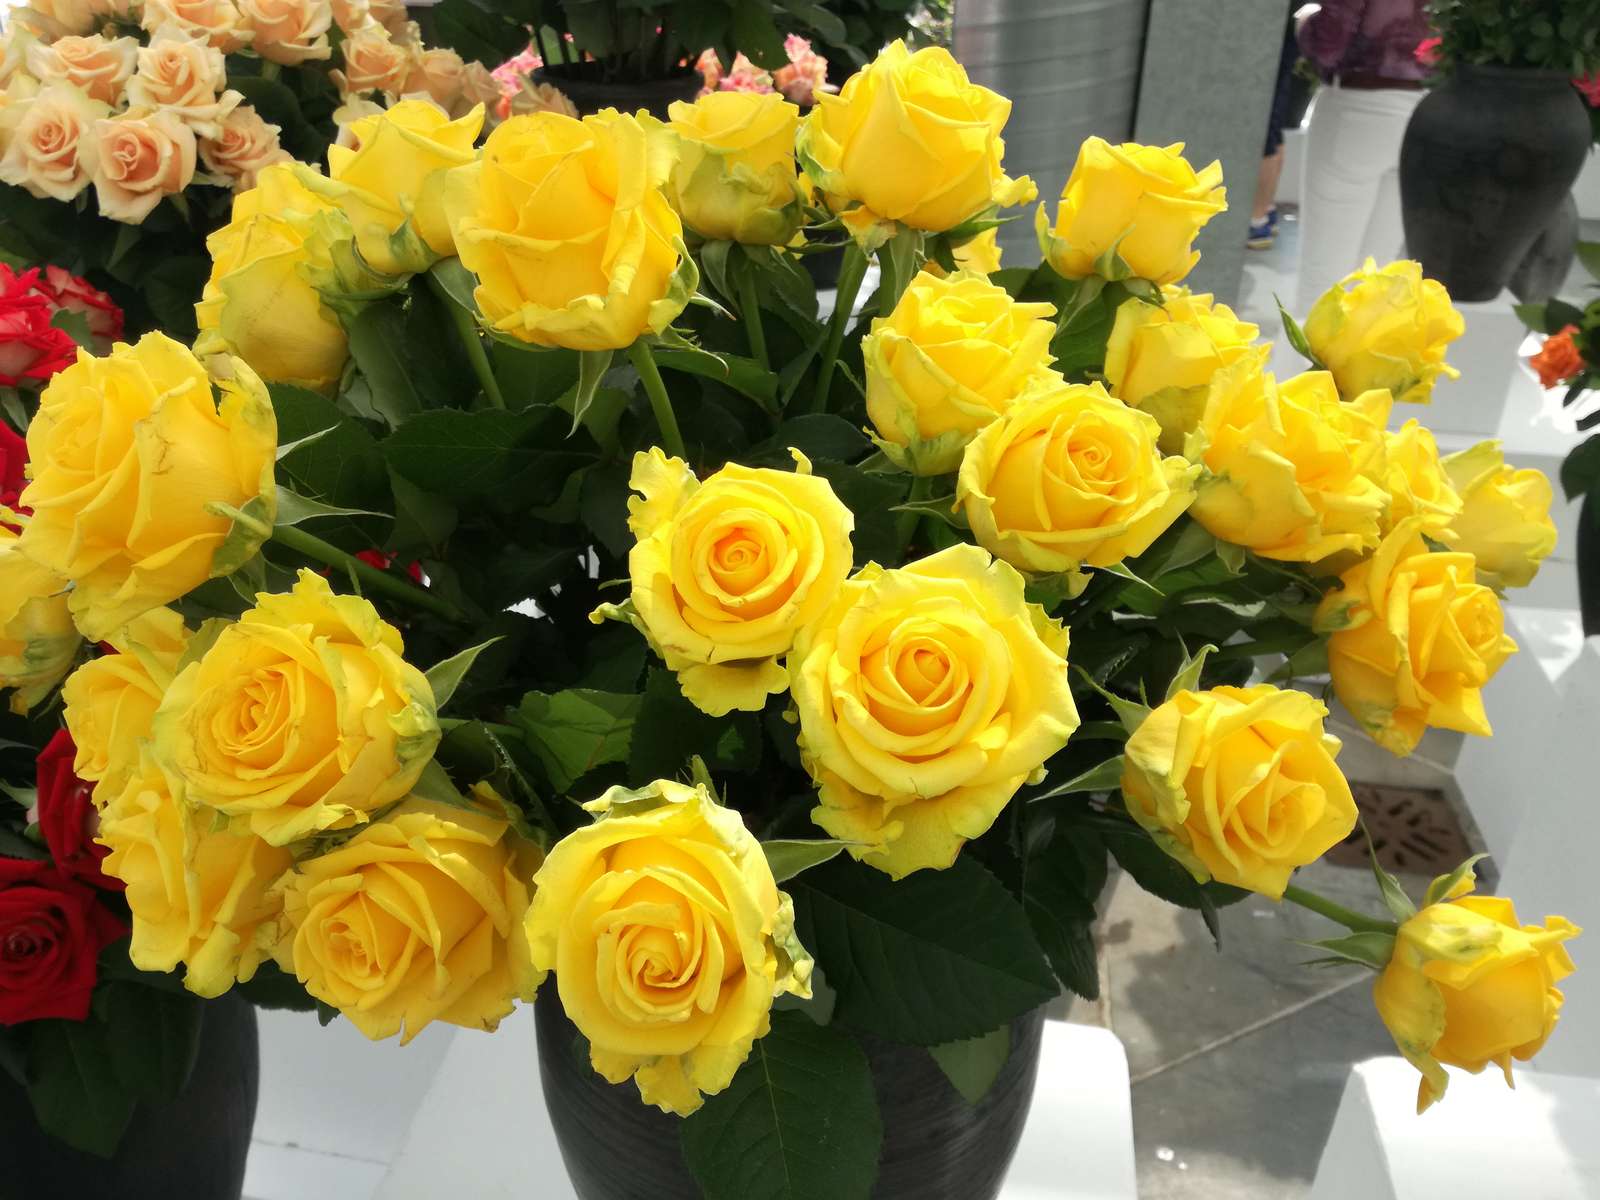 黄色いバラの花束 ジグソーパズルオンライン